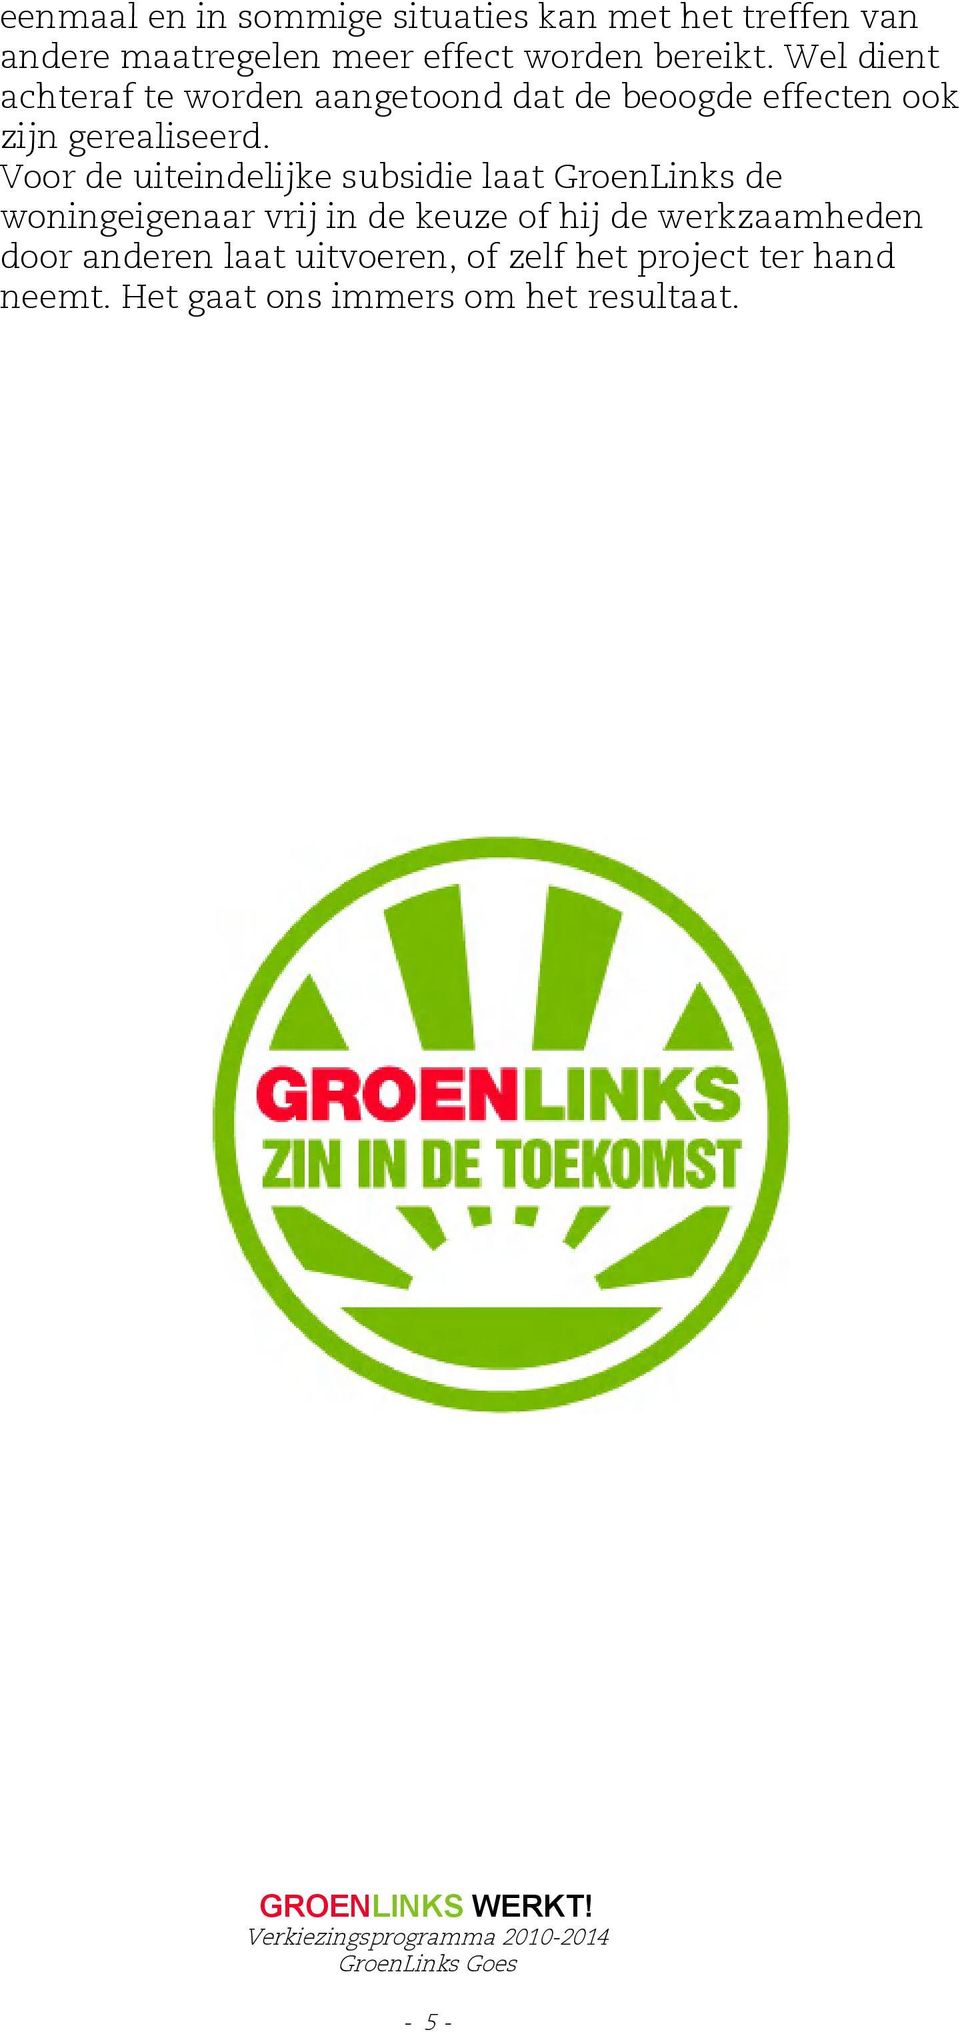 Voor de uiteindelijke subsidie laat GroenLinks de woningeigenaar vrij in de keuze of hij de